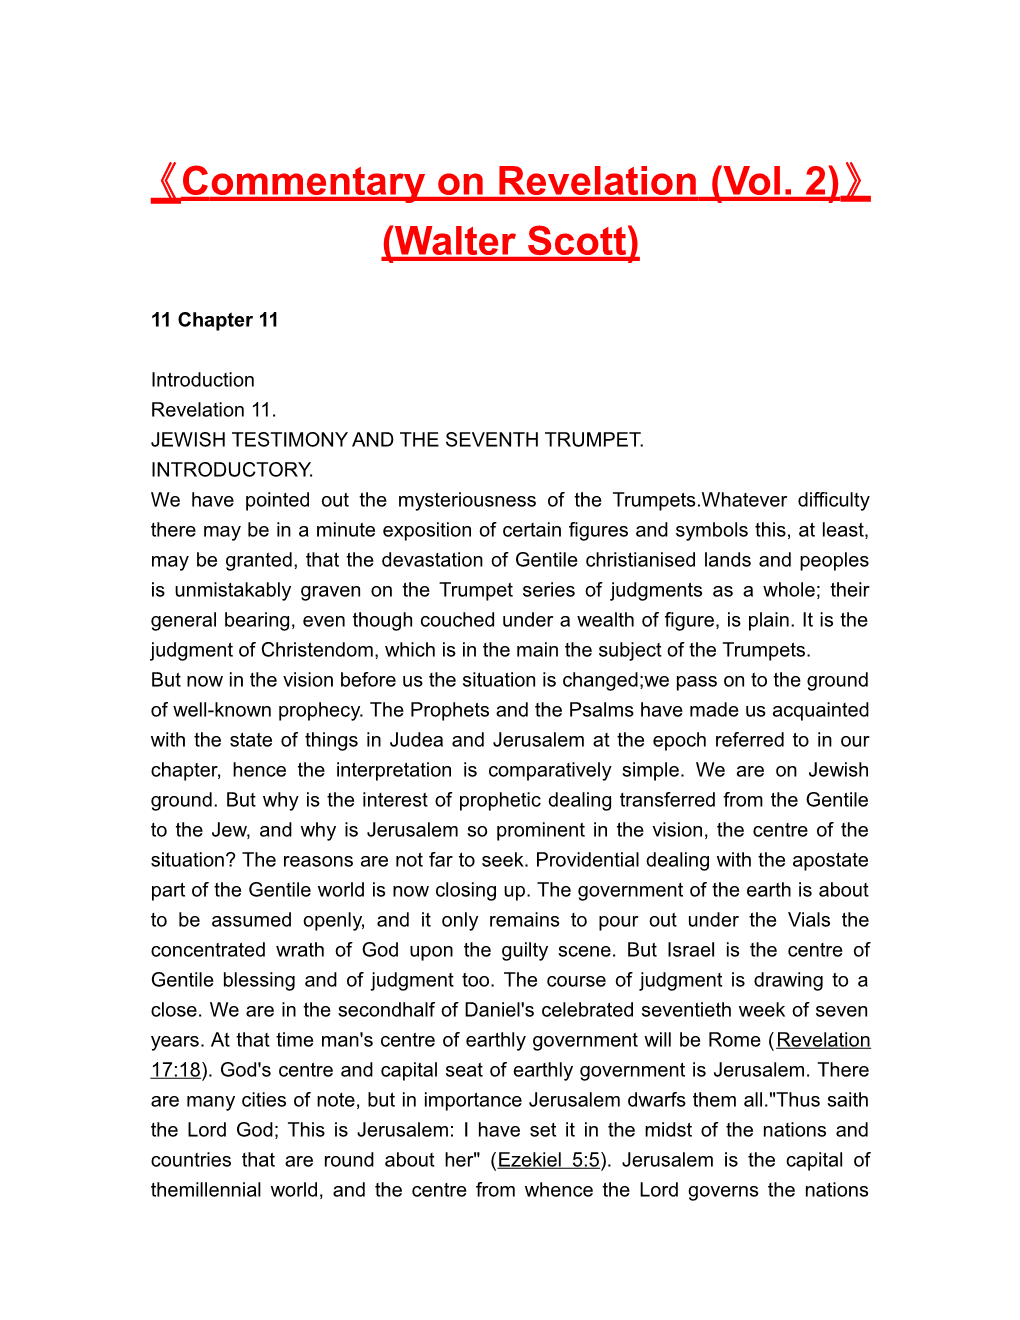 Commentary on Revelation (Vol. 2) (Walter Scott)